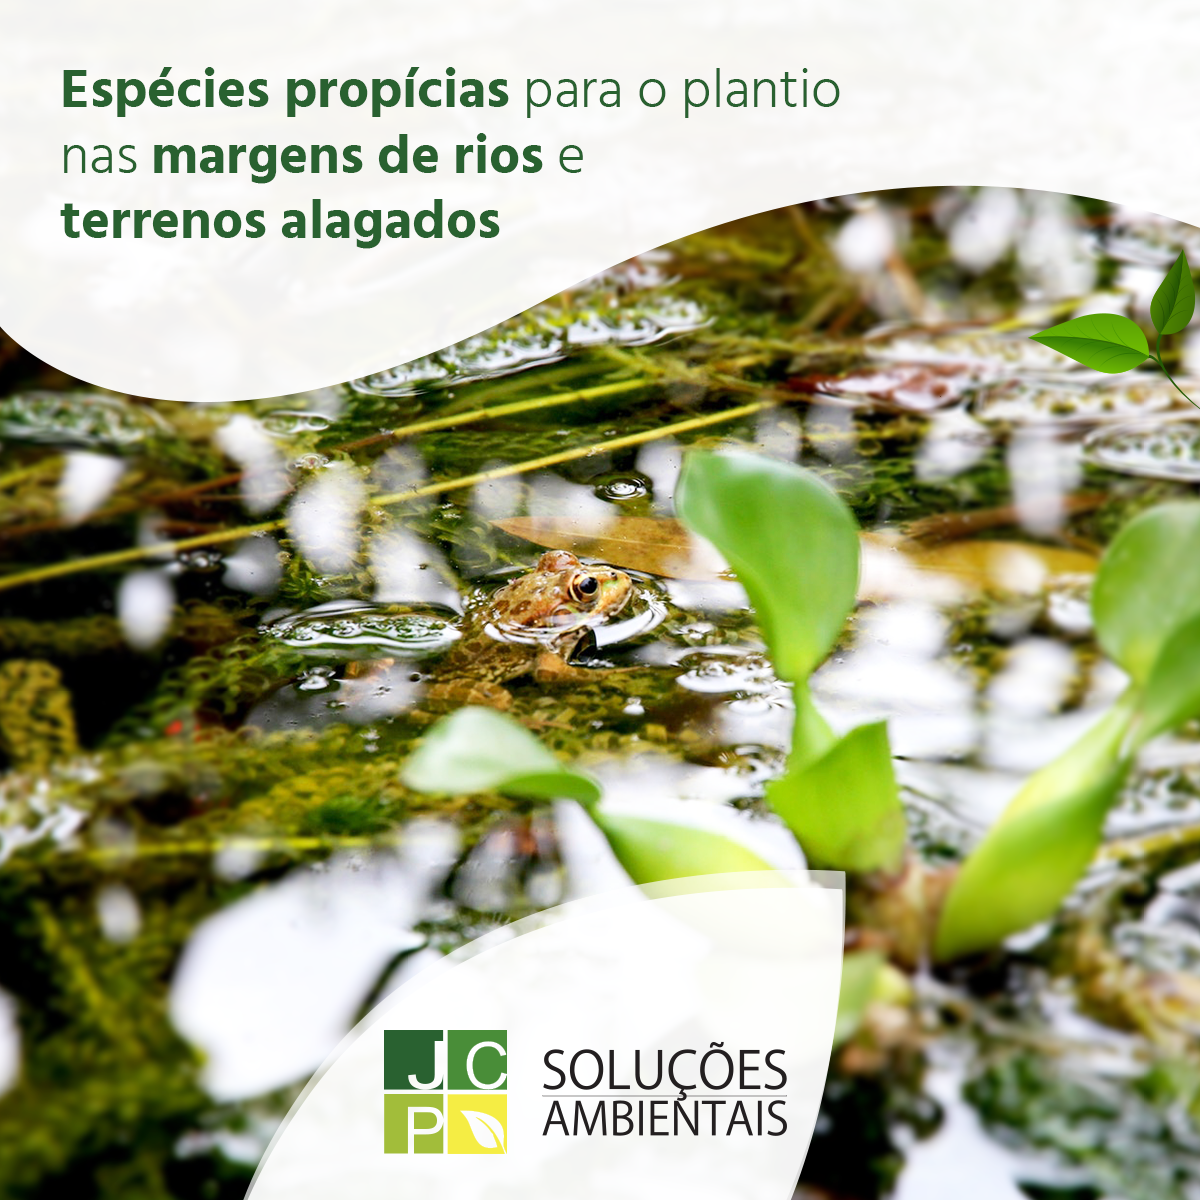 Espécies propícias para o plantio nas margens de rios e terrenos alagados | JCP Soluções Ambientais Campinas